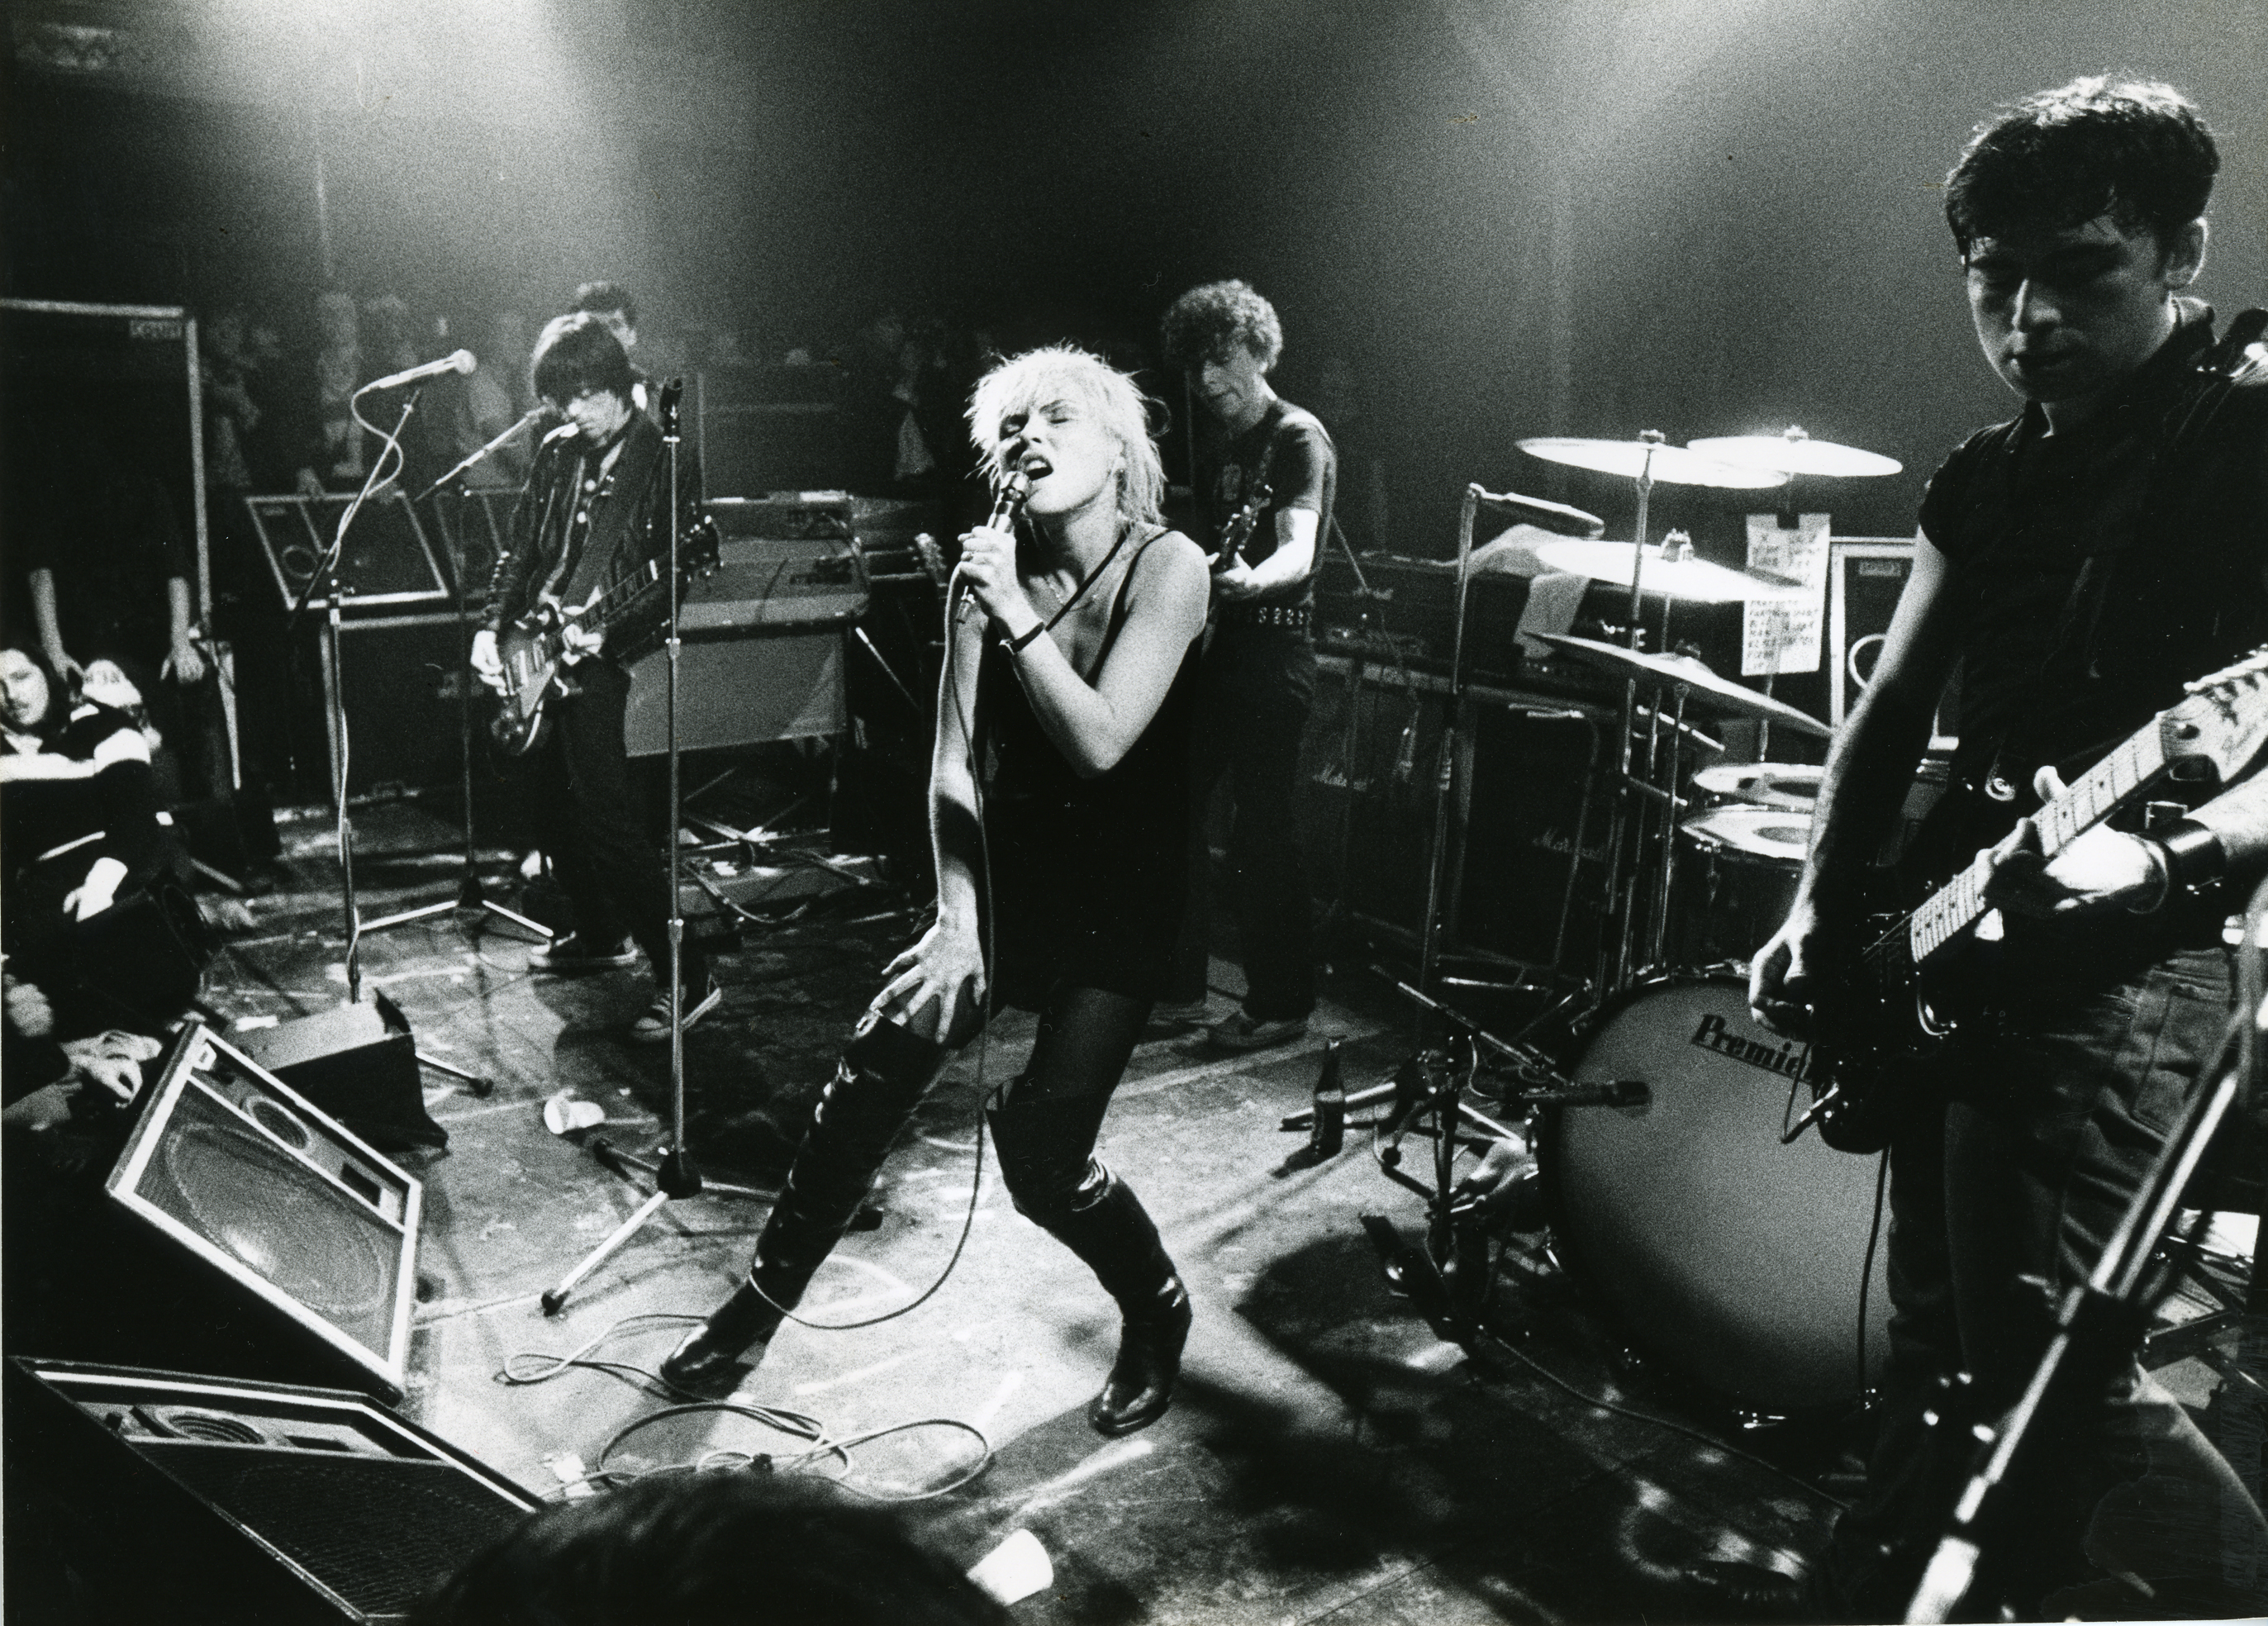 Blondie performs in Amsterdam in 1977.